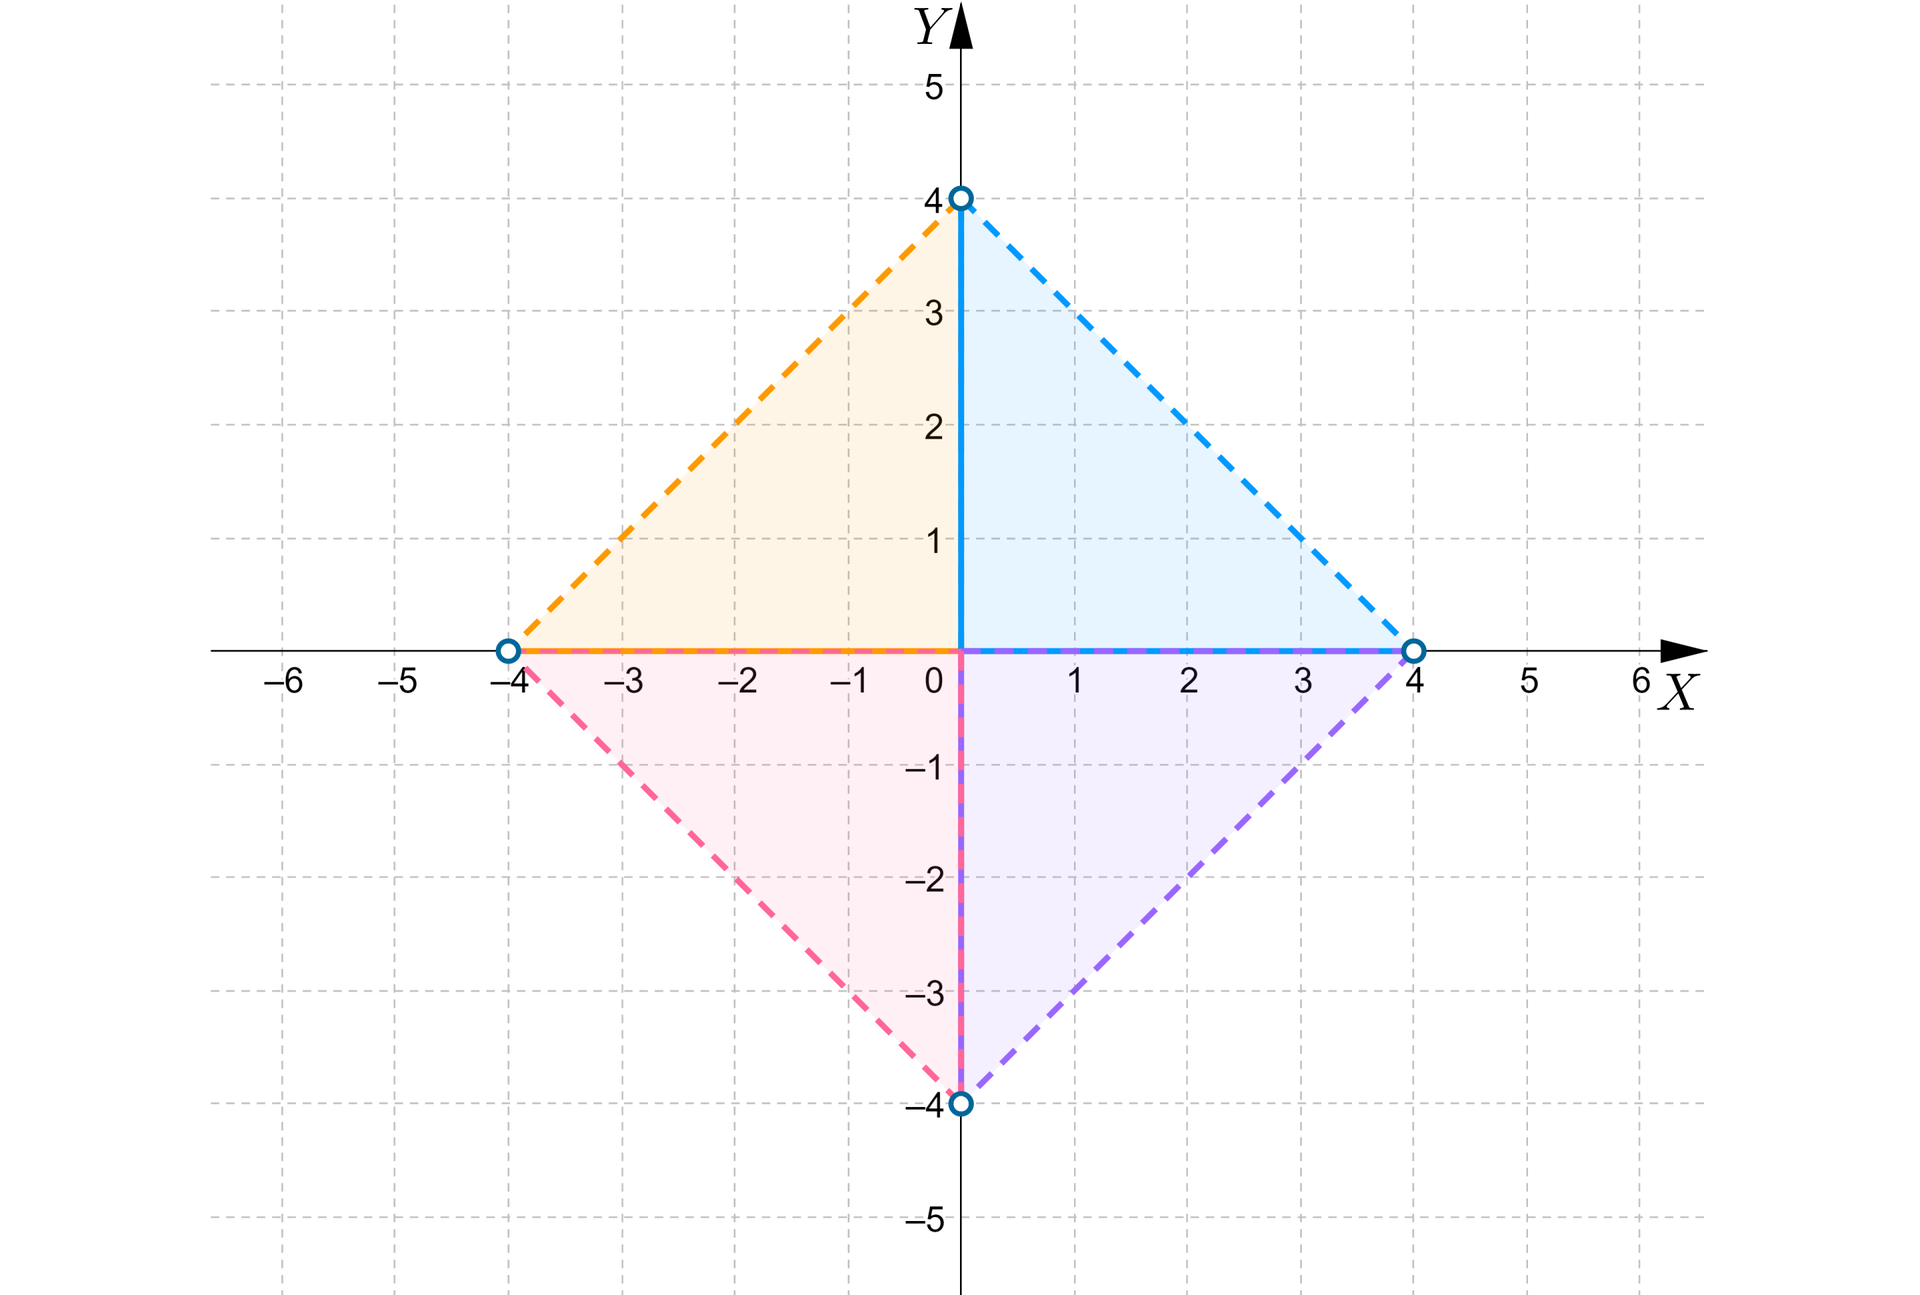 Ilustracja przedstawia układ współrzędnych z poziomą osią x od minus 6 do sześciu i pionową osią y od minus 5 do pięciu. Na osiach zaznaczone zostały cztery następujące niezamalowane punkty: pierwszy: początek nawiasu, minus 4, 0, zamknięcie nawiasu, drugi: początek nawiasu, 0, 4, zamknięcie nawiasu, trzeci: początek nawiasu, 4, 0, zamknięcie nawiasu i czwarty: początek nawiasu, 0, minus 4, zamknięcie nawiasu. Punkty zostały połączone liniami przerywanymi, tak że na płaszczyźnie pojawił się romb. Osie dzielą romb na cztery części w kształcie trójkąta. Część znajdująca się w ćwiartce pierwszej ma kolor niebieski, część znajdująca się w ćwiartce drugiej ma kolor pomarańczowy, część z ćwiartki trzeciej ma kolor różowy, a część znajdująca się w ćwiartce czwartej ma kolor fioletowy.